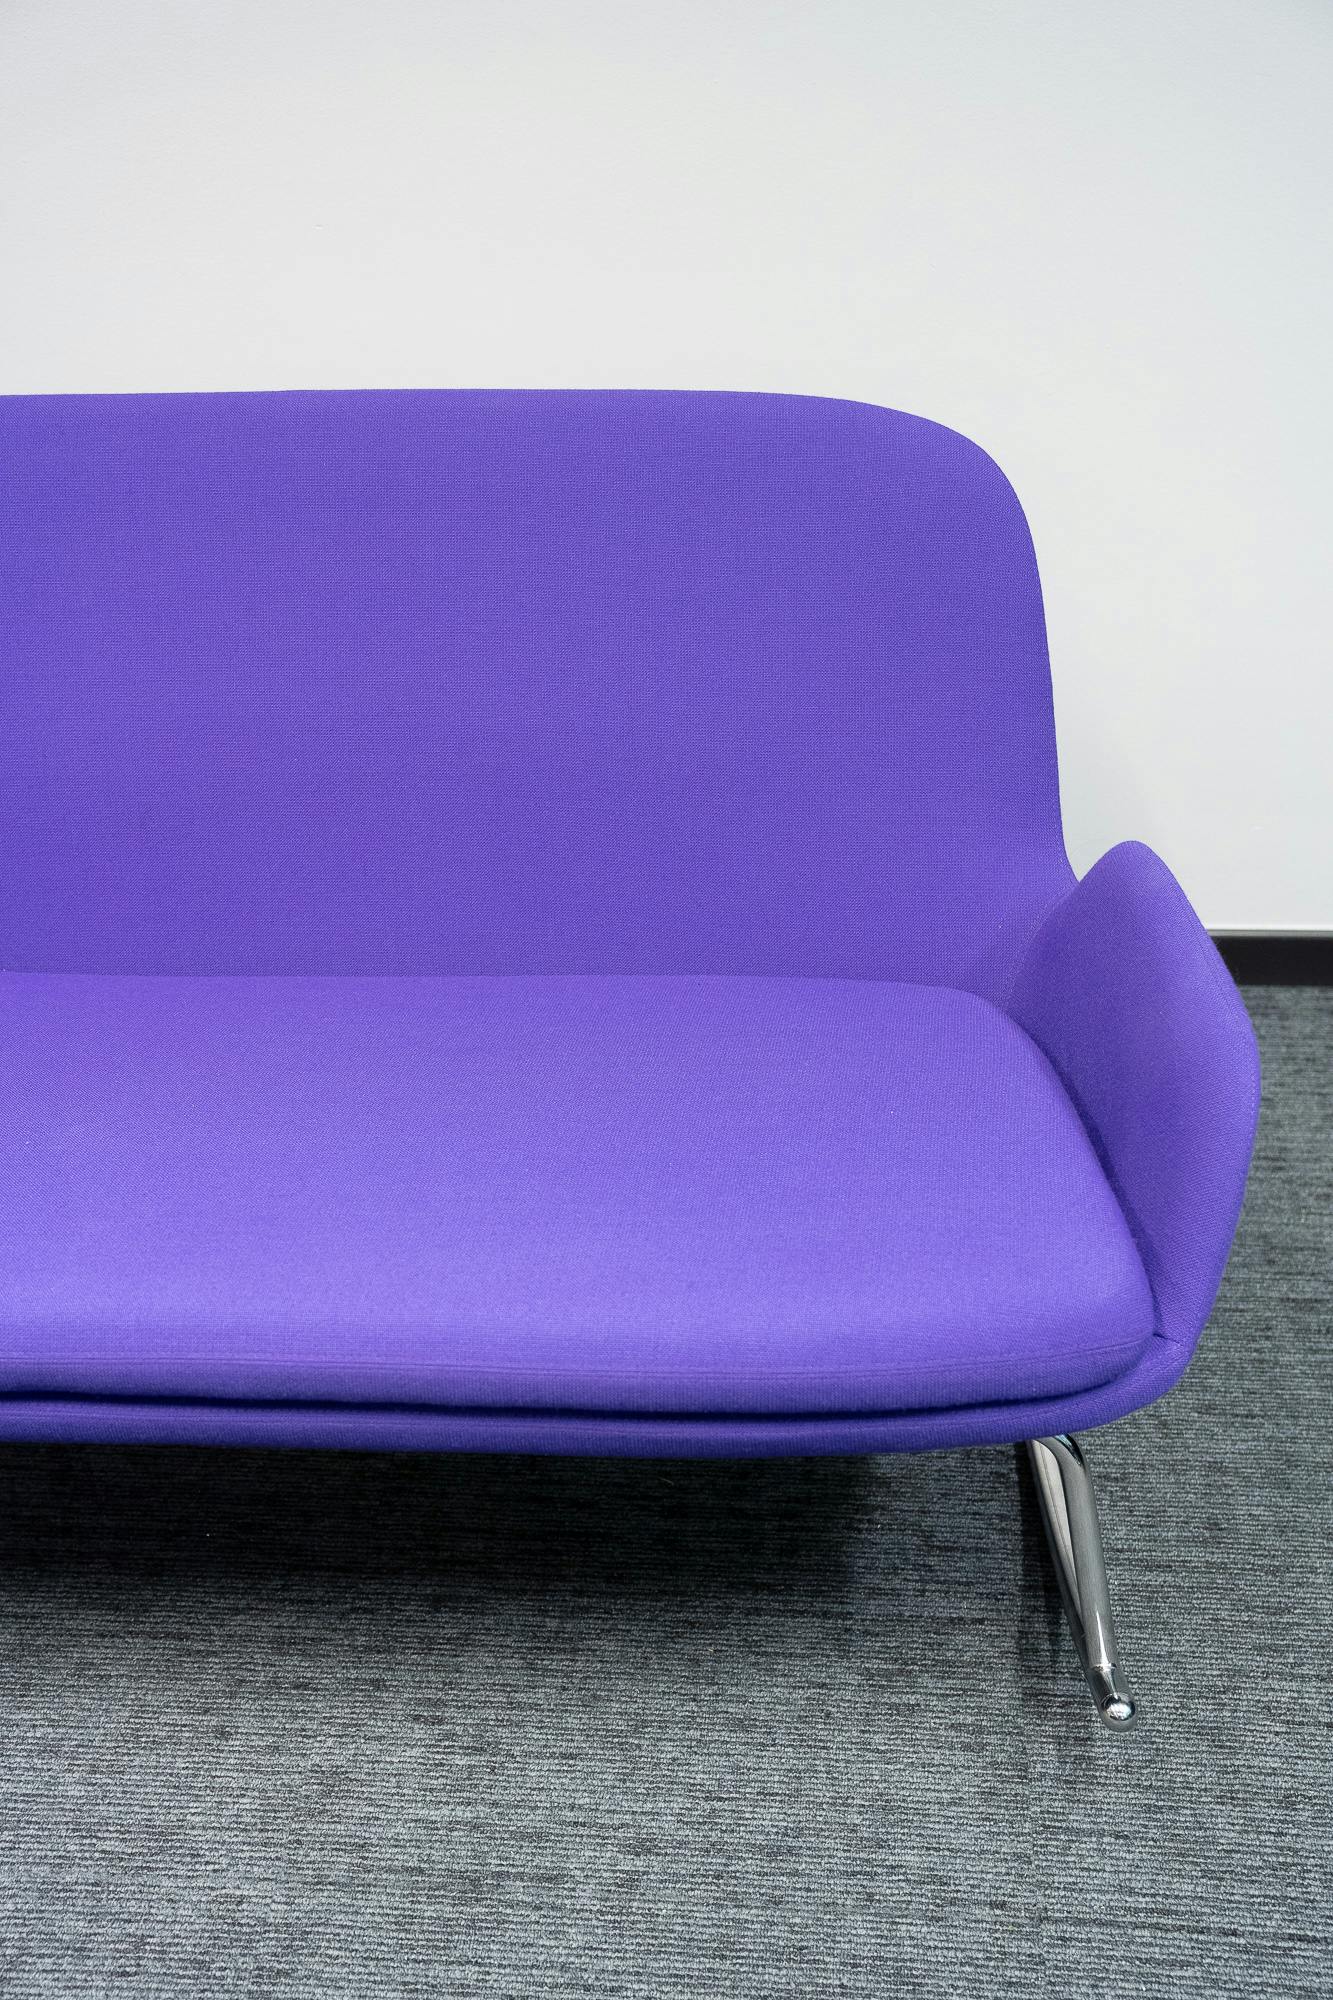 Normann paars design schommelstoel - Tweedehands kwaliteit "Leunstoelen en luiers" - Relieve Furniture